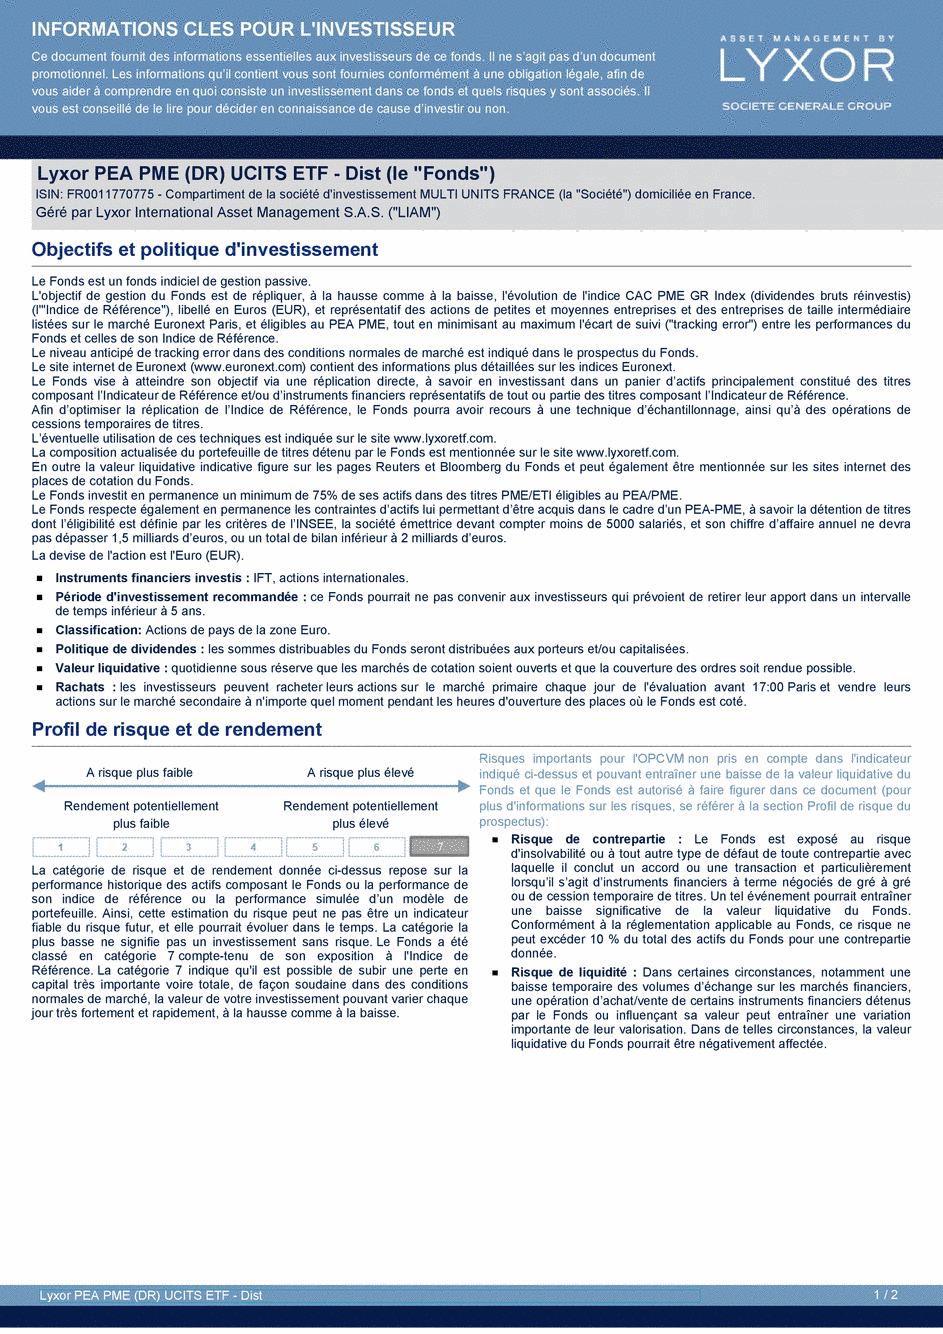 DICI Lyxor PEA PME (DR) UCITS ETF - Dist - 19/02/2021 - Français